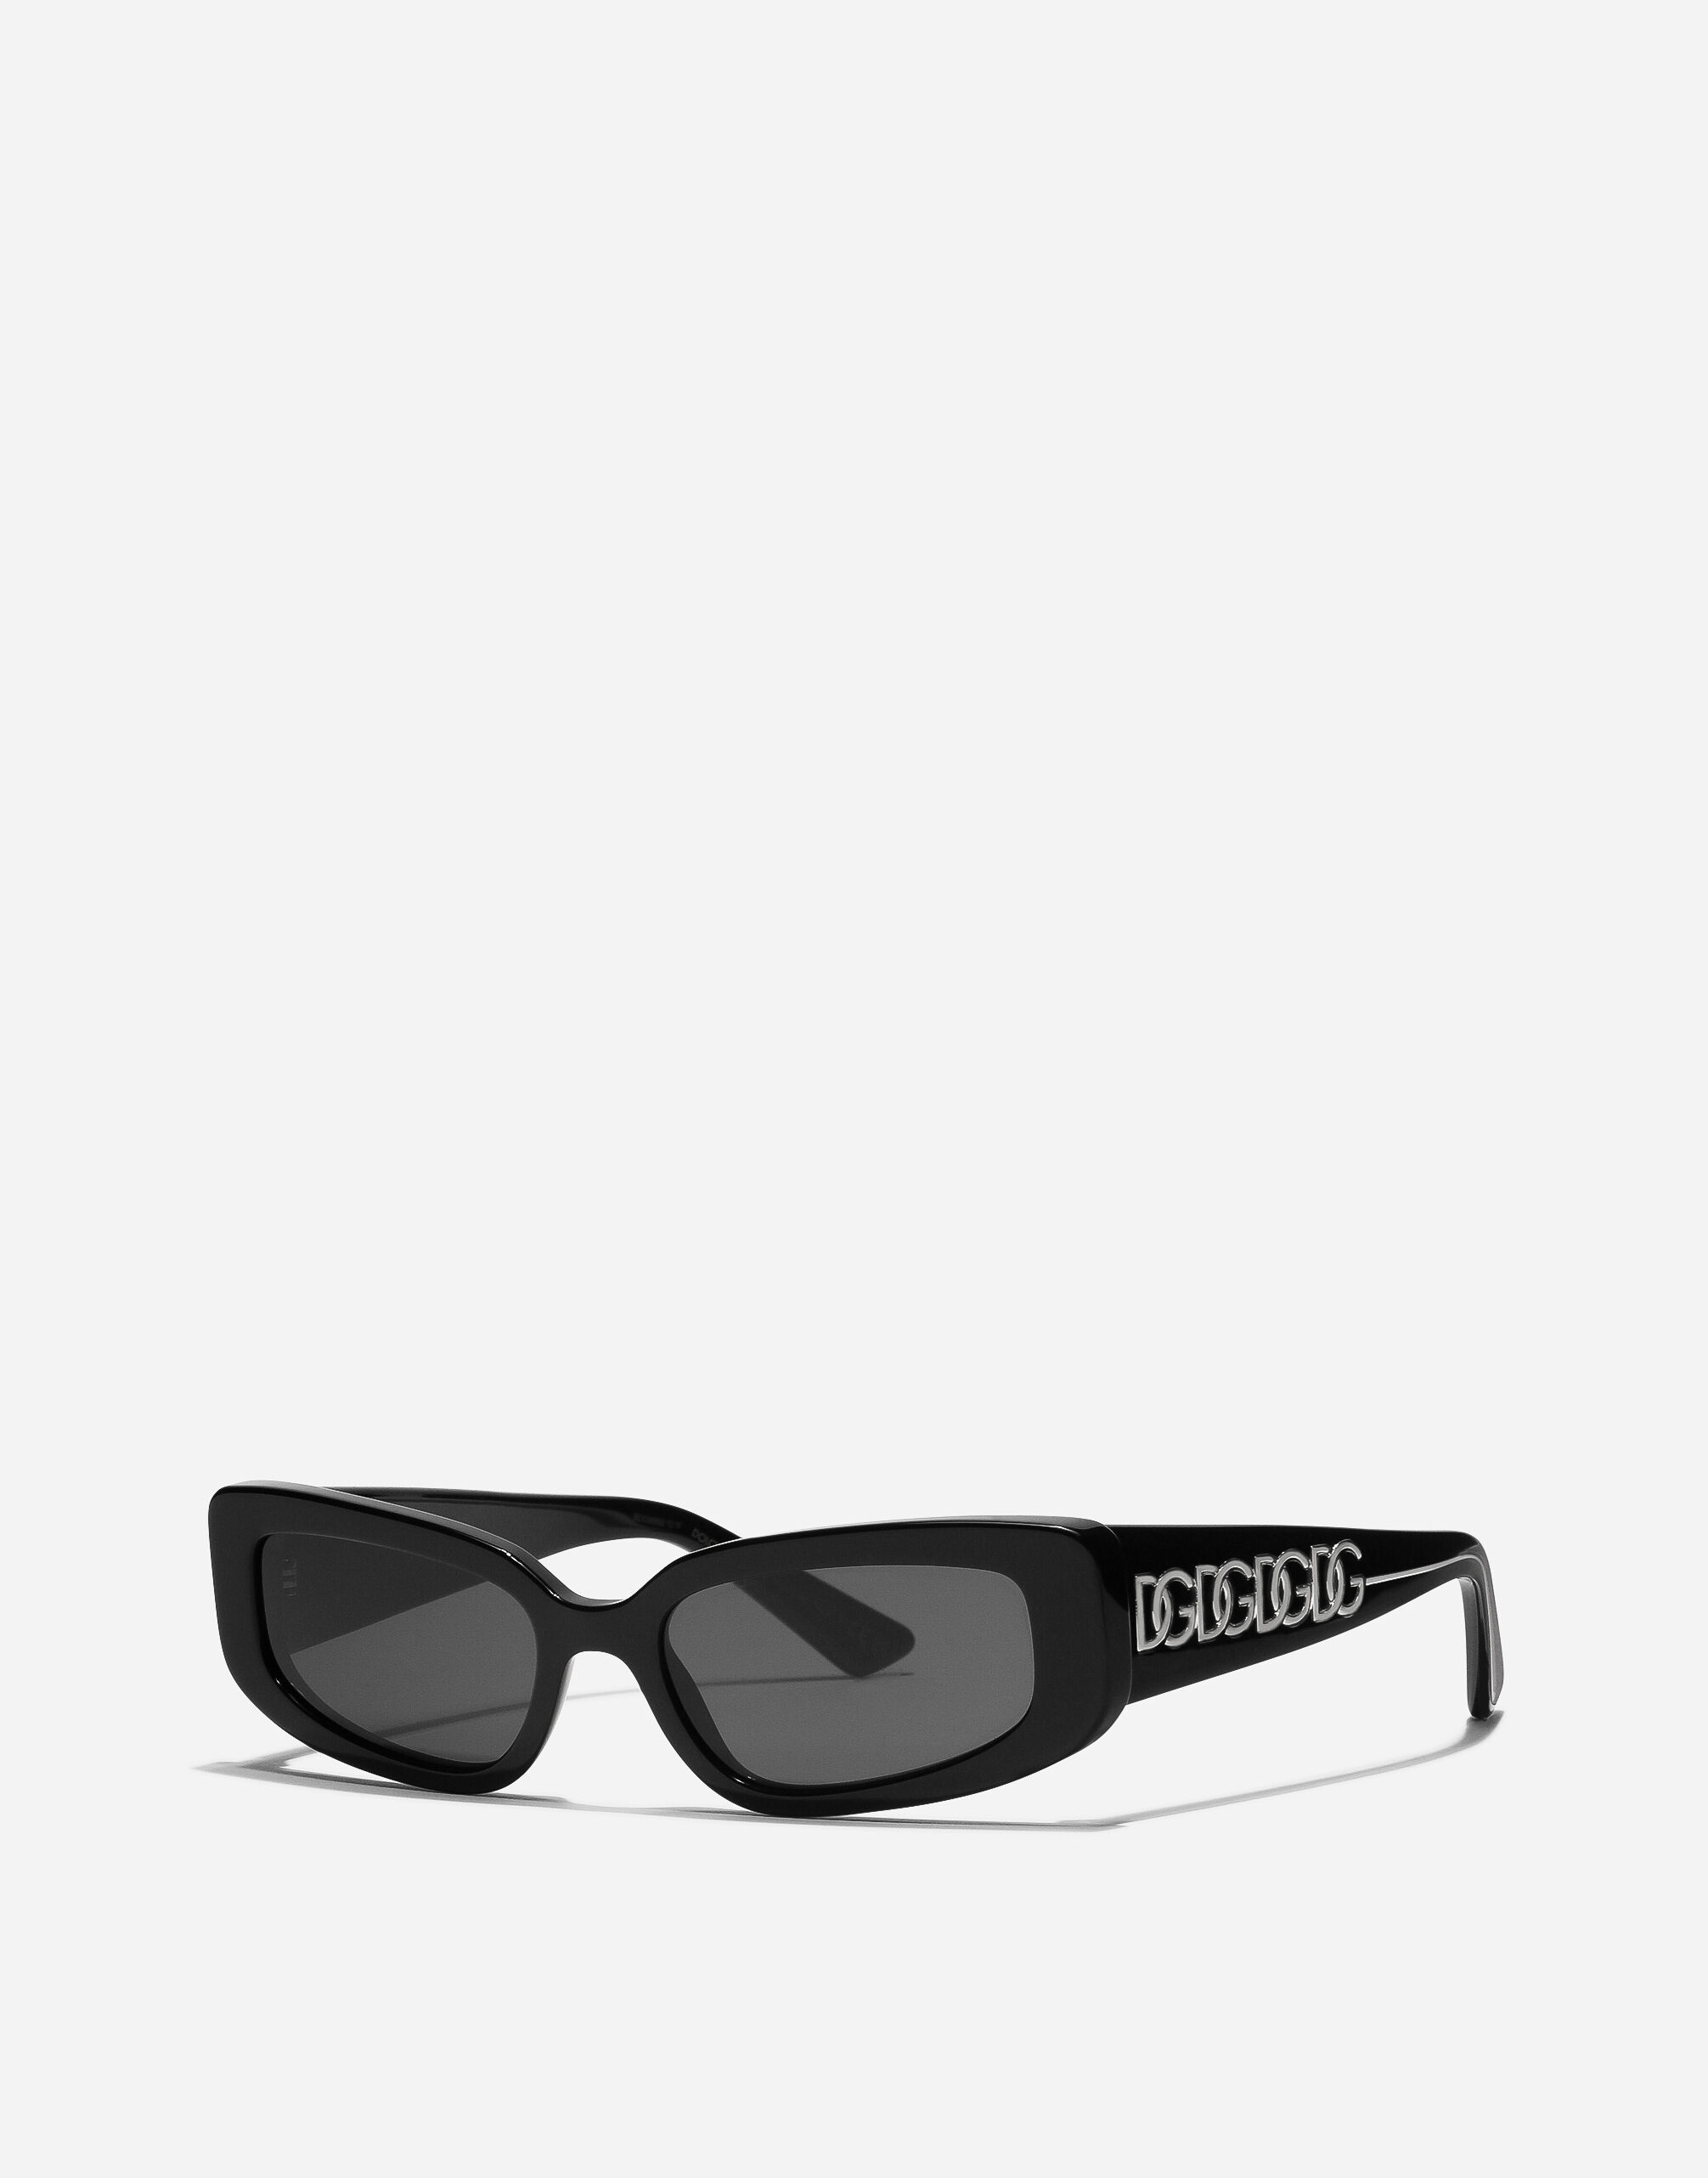 DG Essentials sunglasses - 6